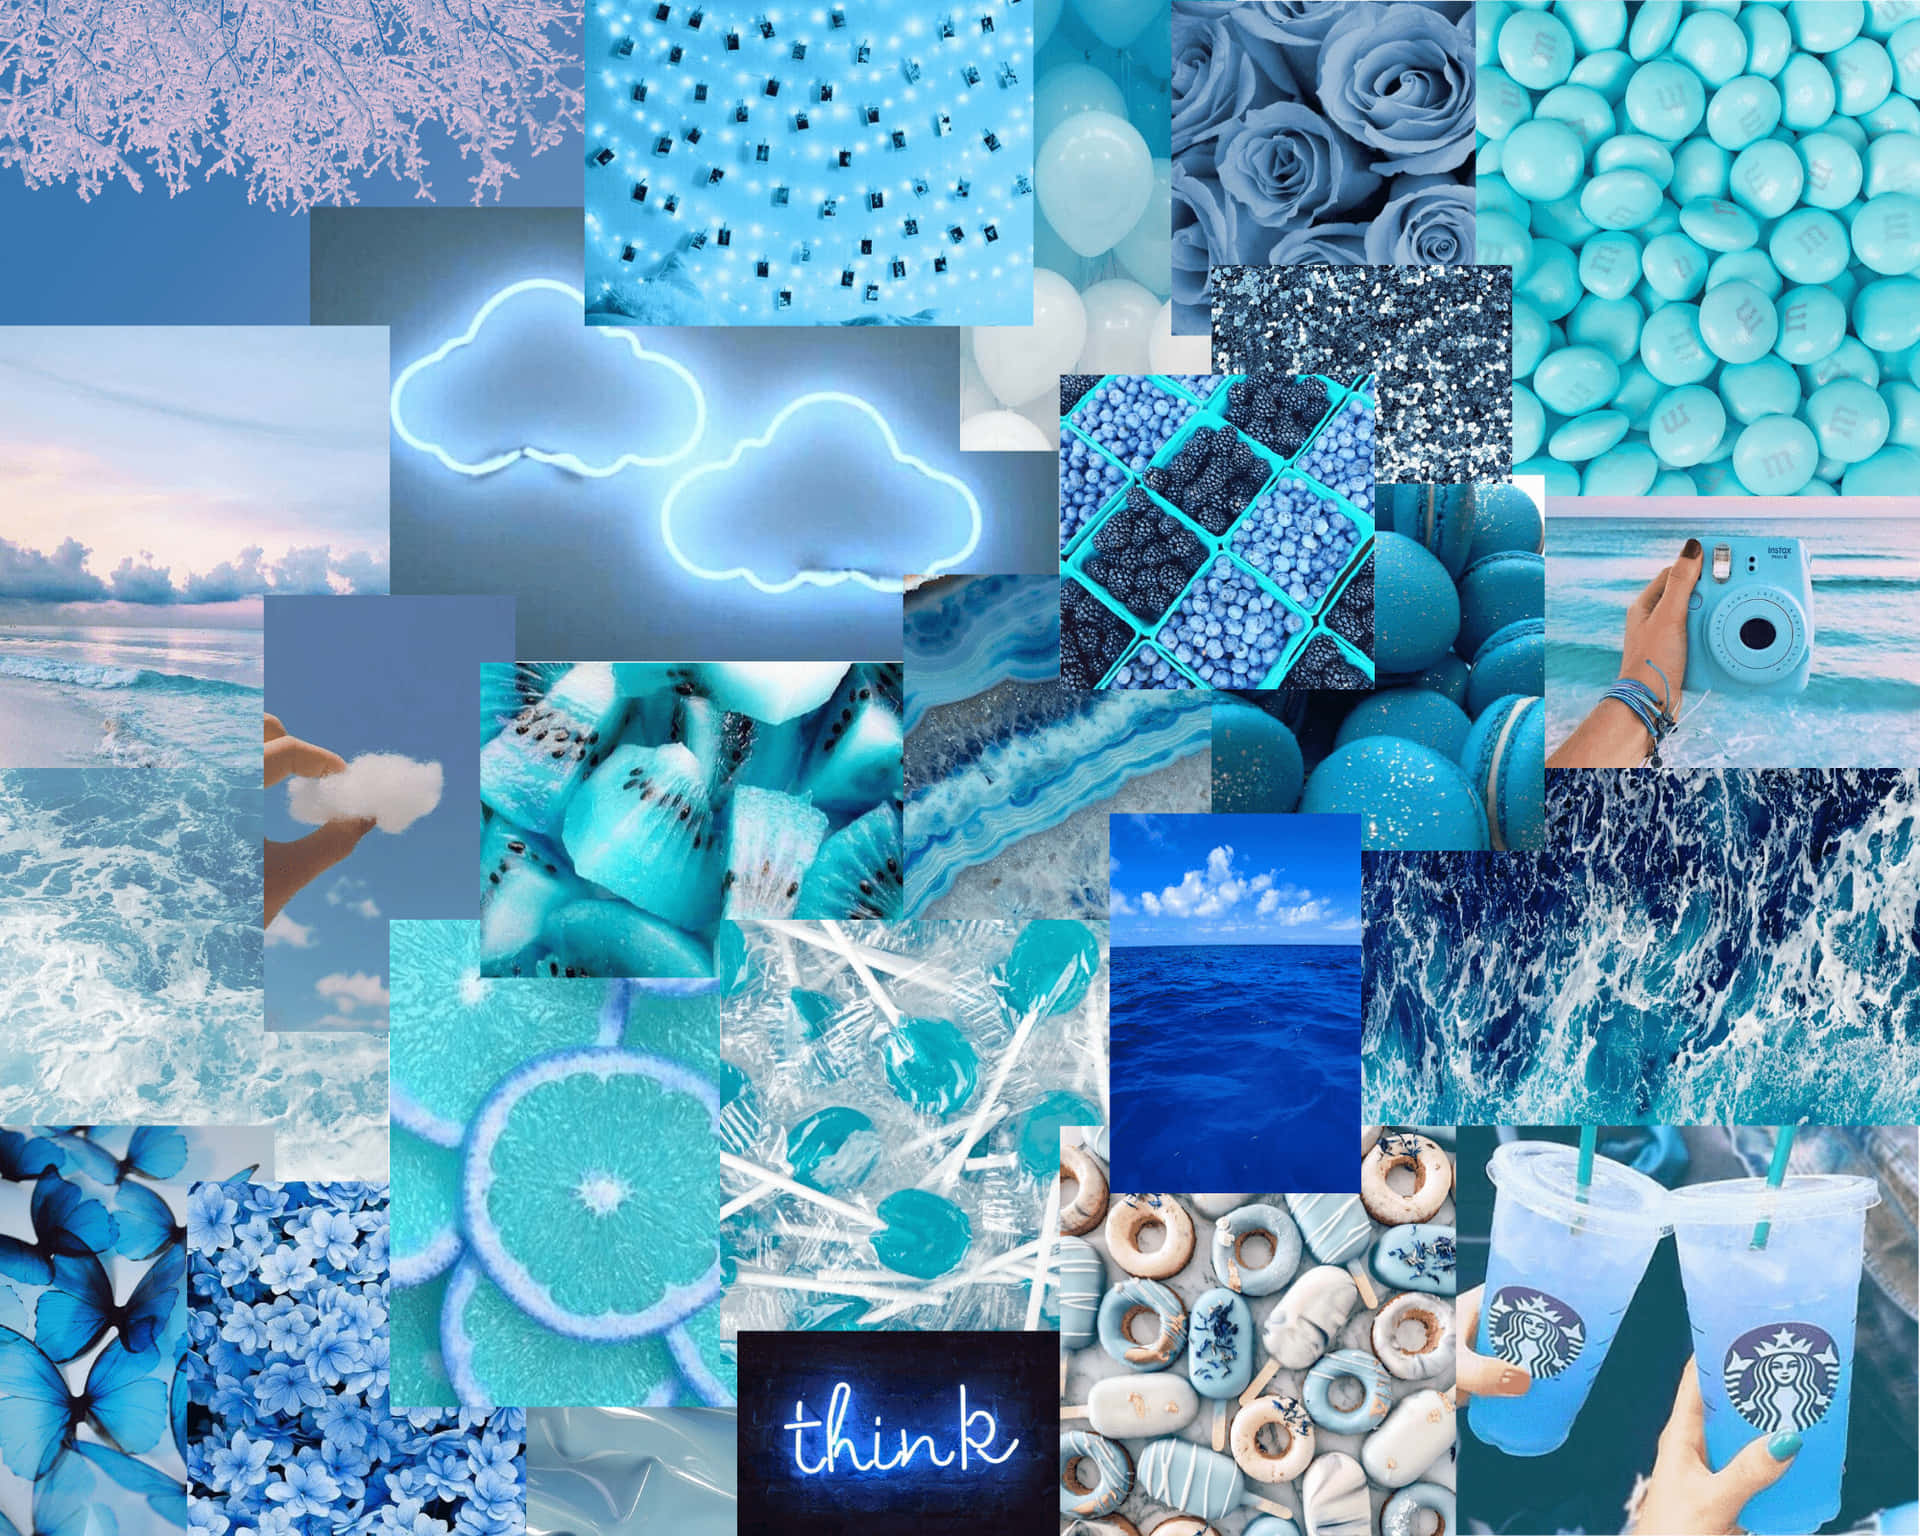 Njutav Den Lugnande Skönheten I Pastellblått Med Denna Estetiska Tumblr-konst Som Bakgrundsbild På Din Dator Eller Mobiltelefon. Wallpaper